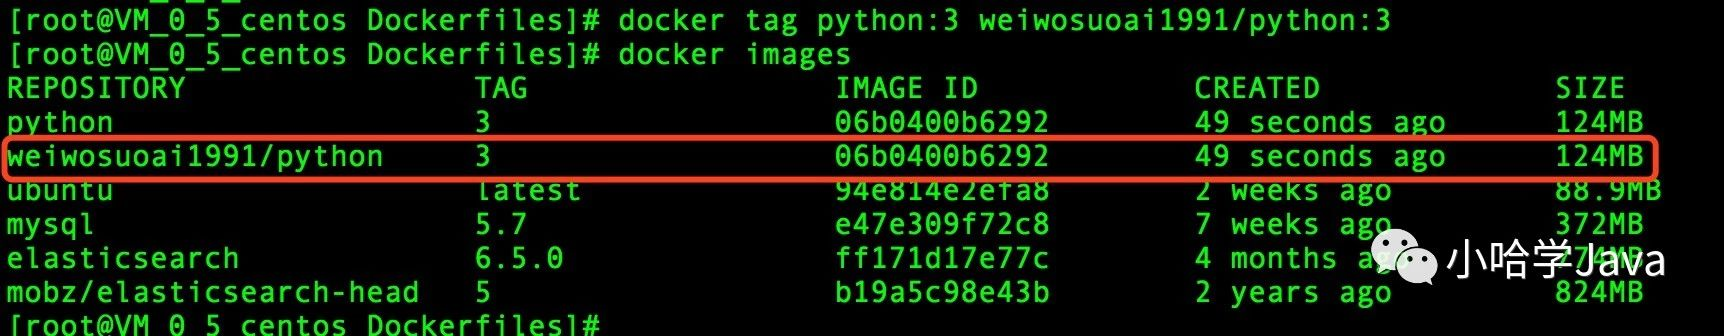 python: 3 image to play tag